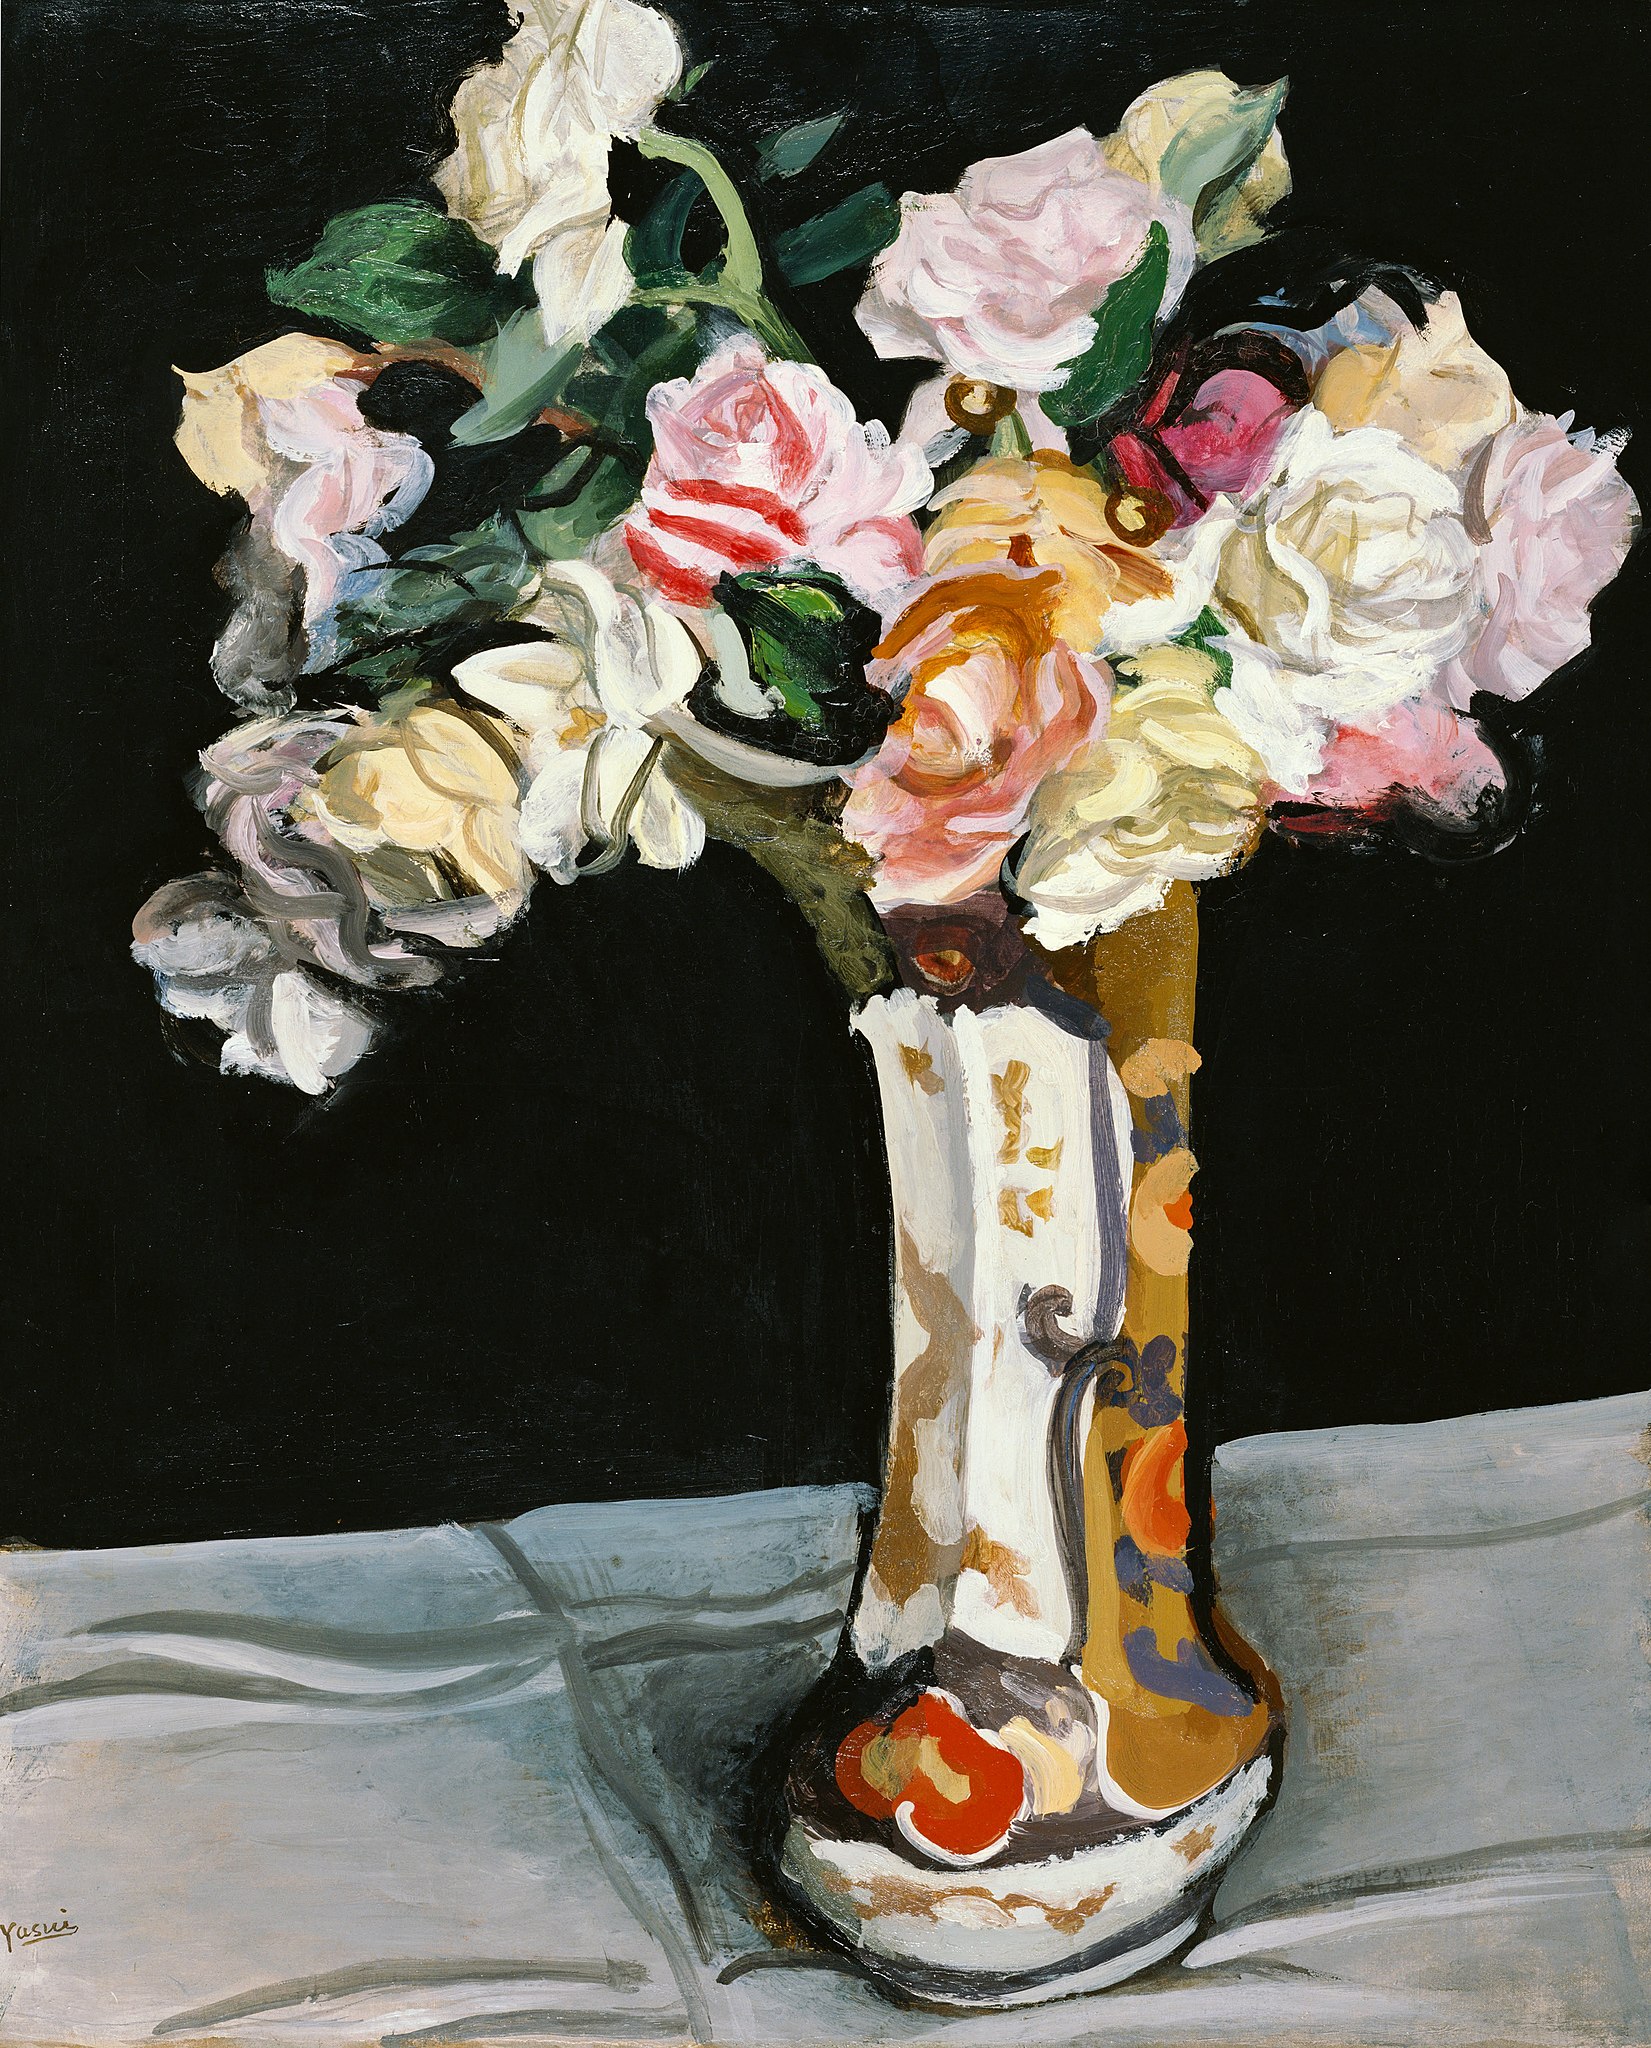 Roses by Sōtarō Yasui - 1932 - 51.9 x 63 cm Artizon Museum